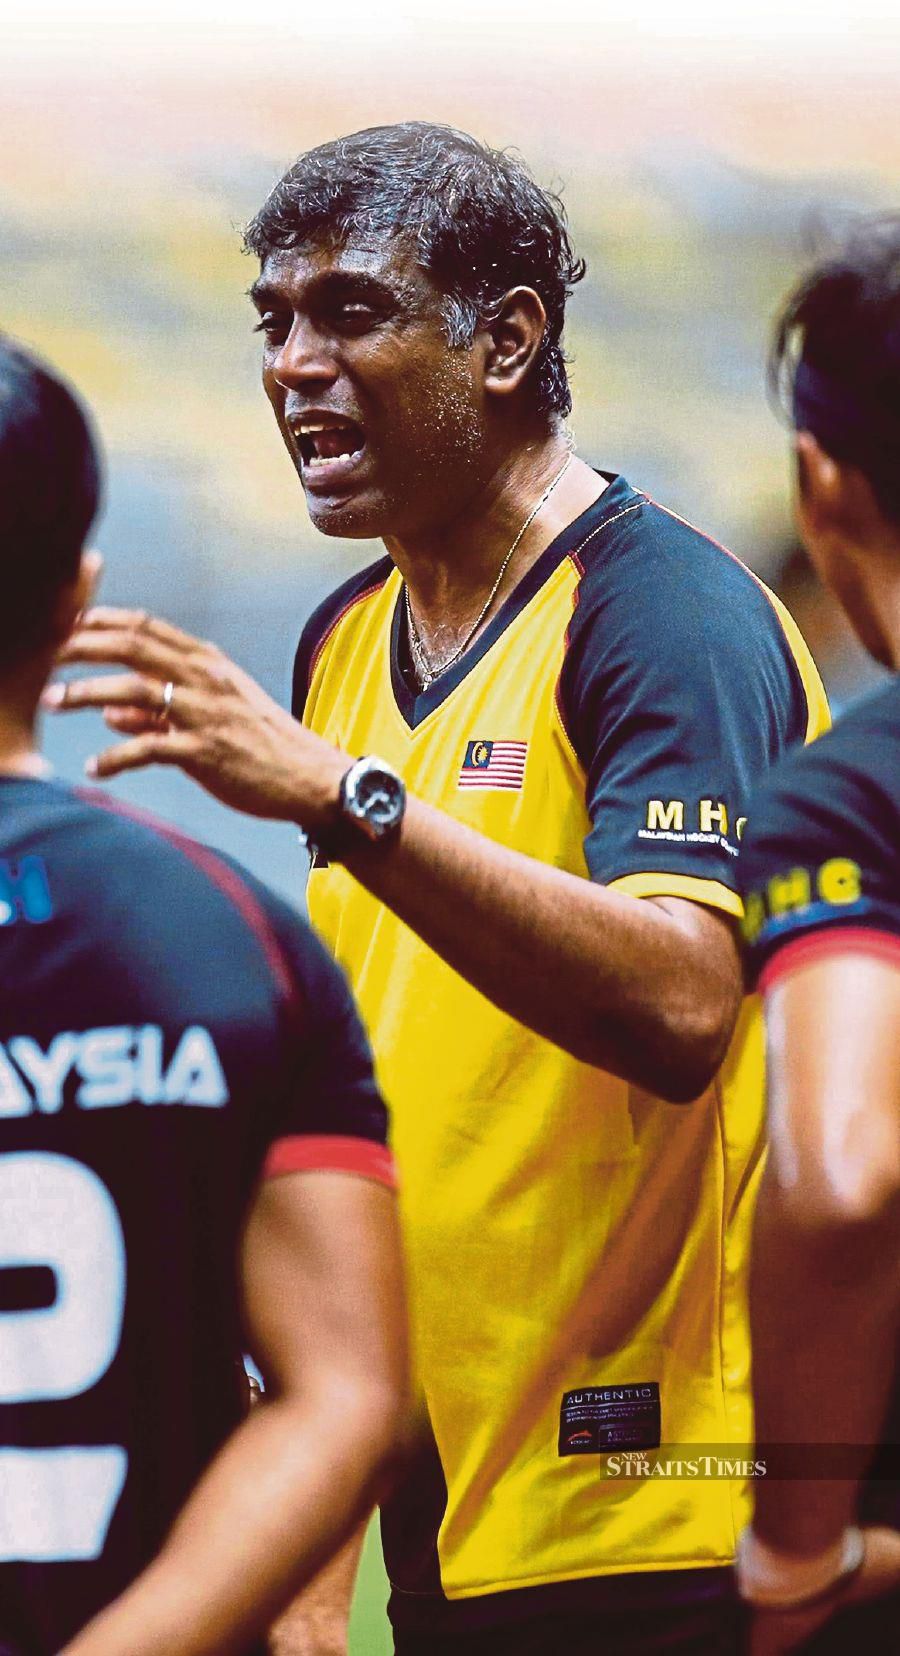 Malaysia coach Arul Selvaraj